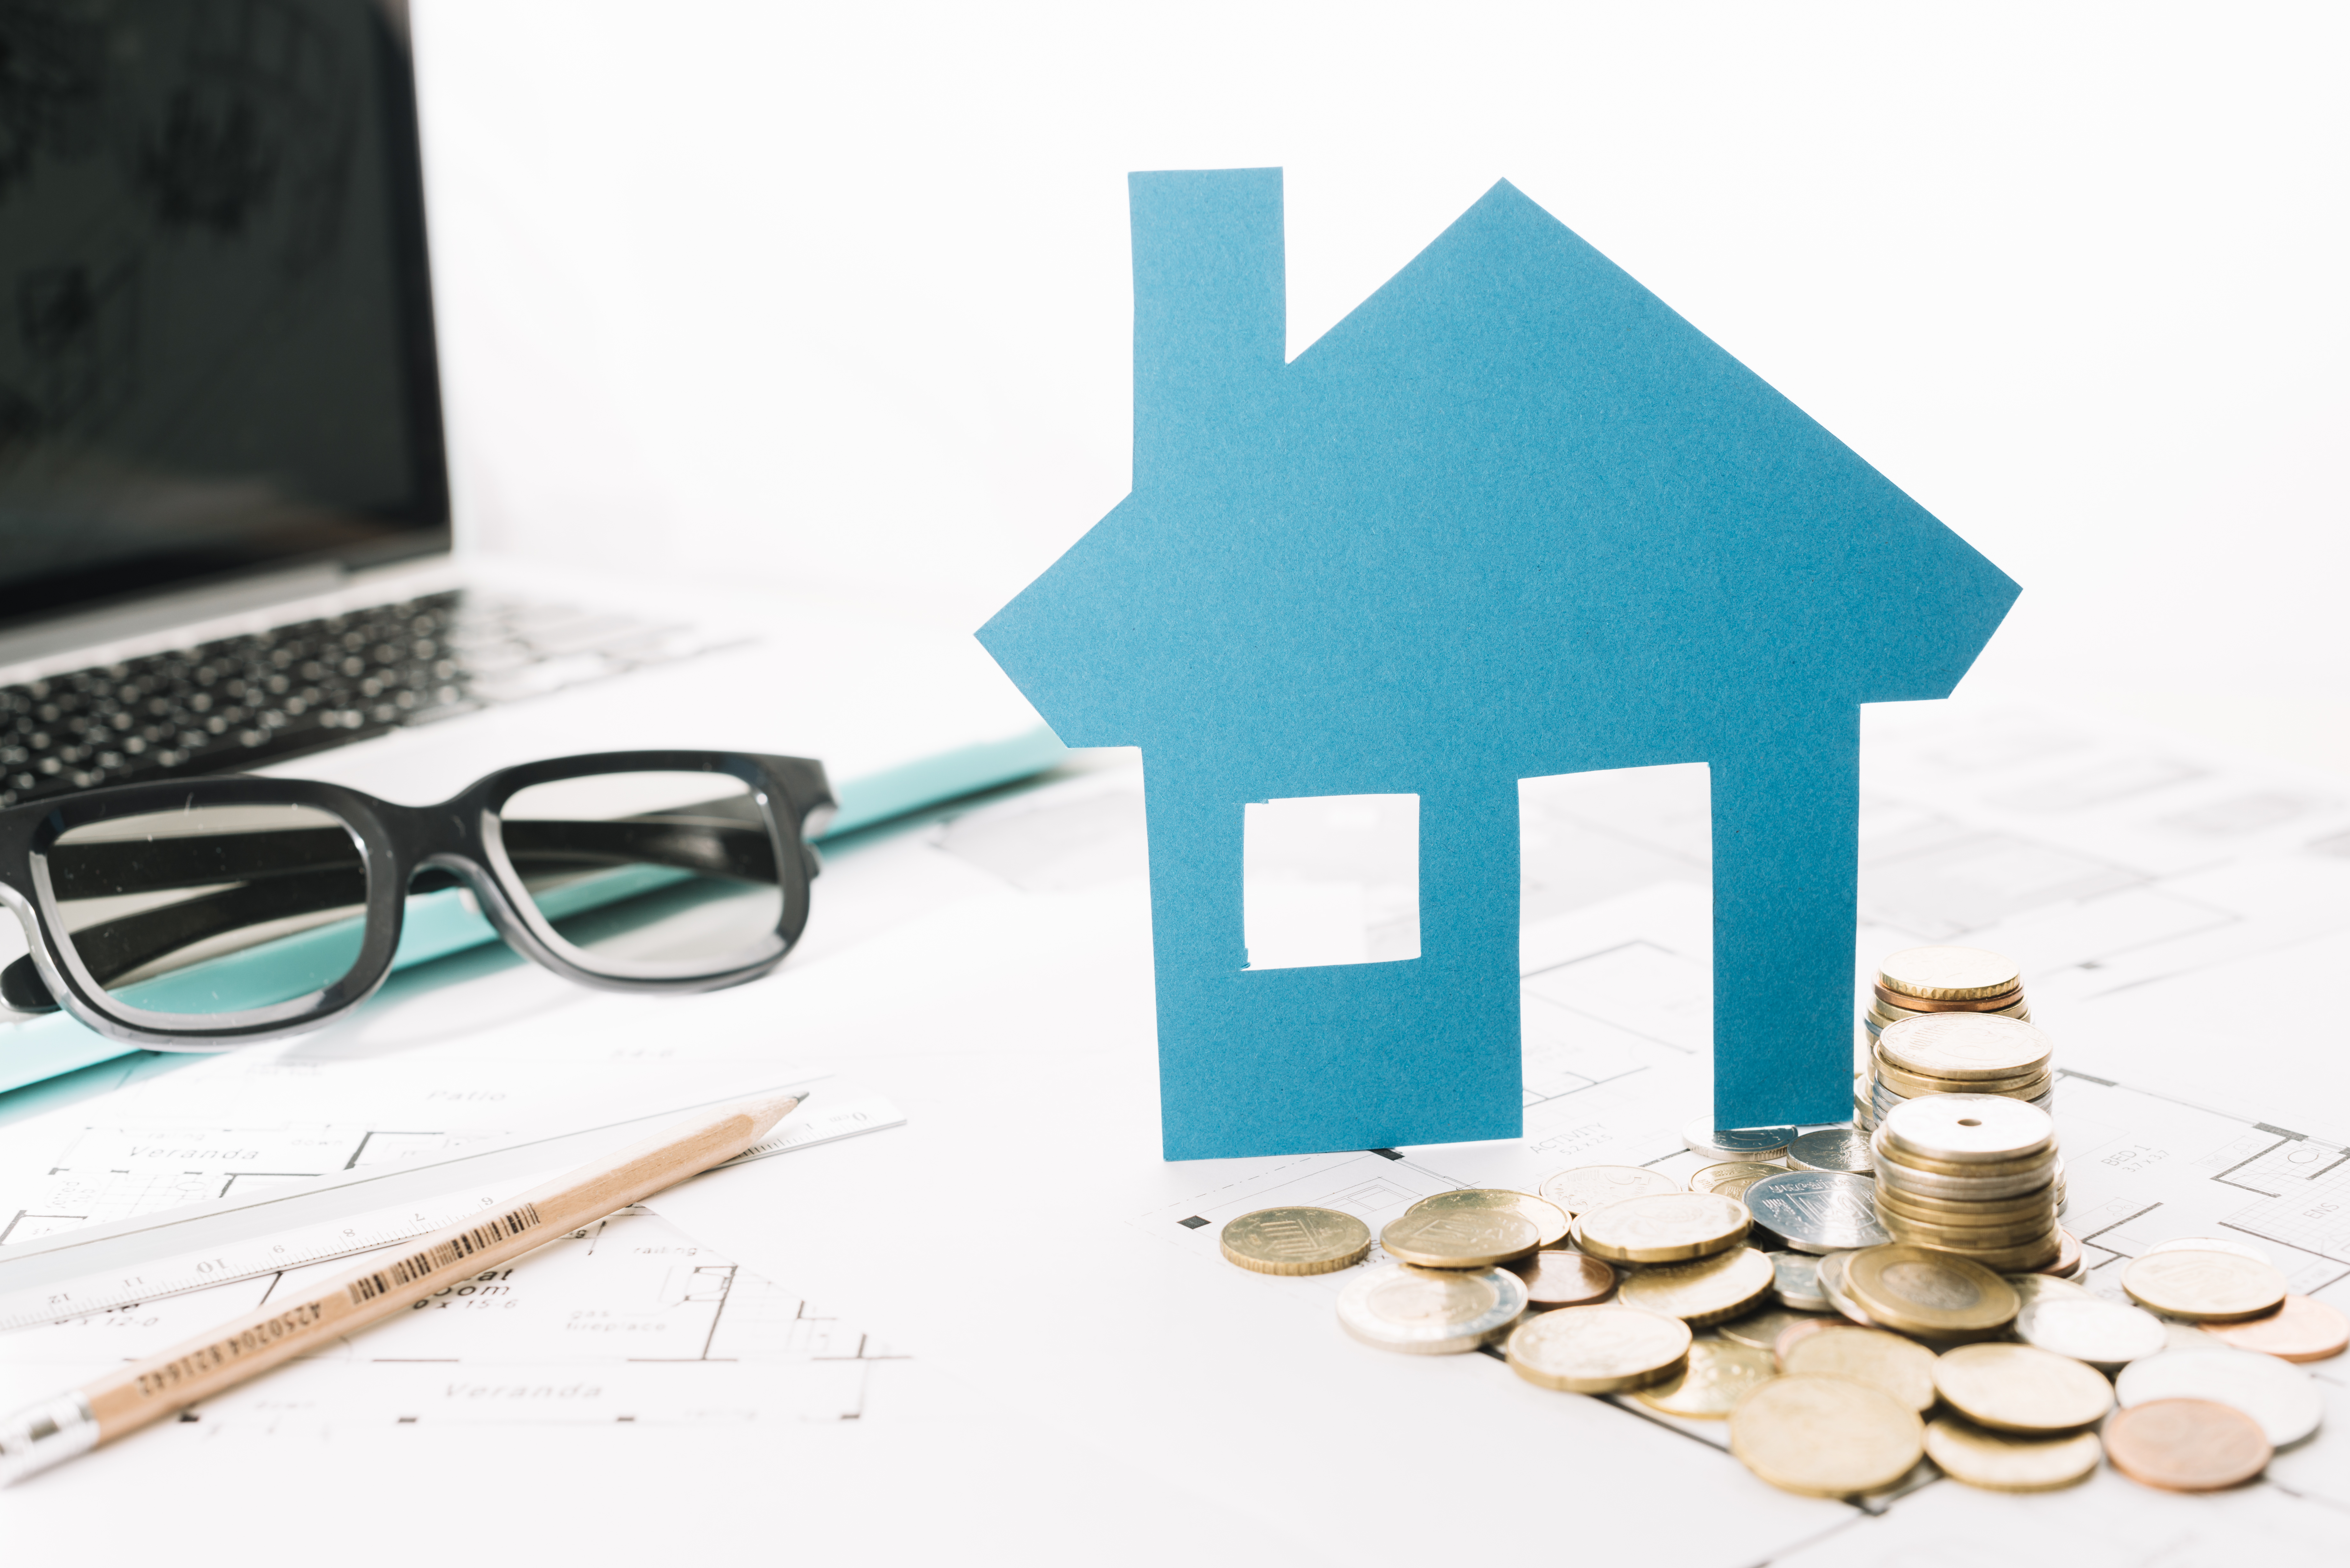 Financiamento imobiliário: confira tudo o que você precisa saber antes de comprar um imóvel